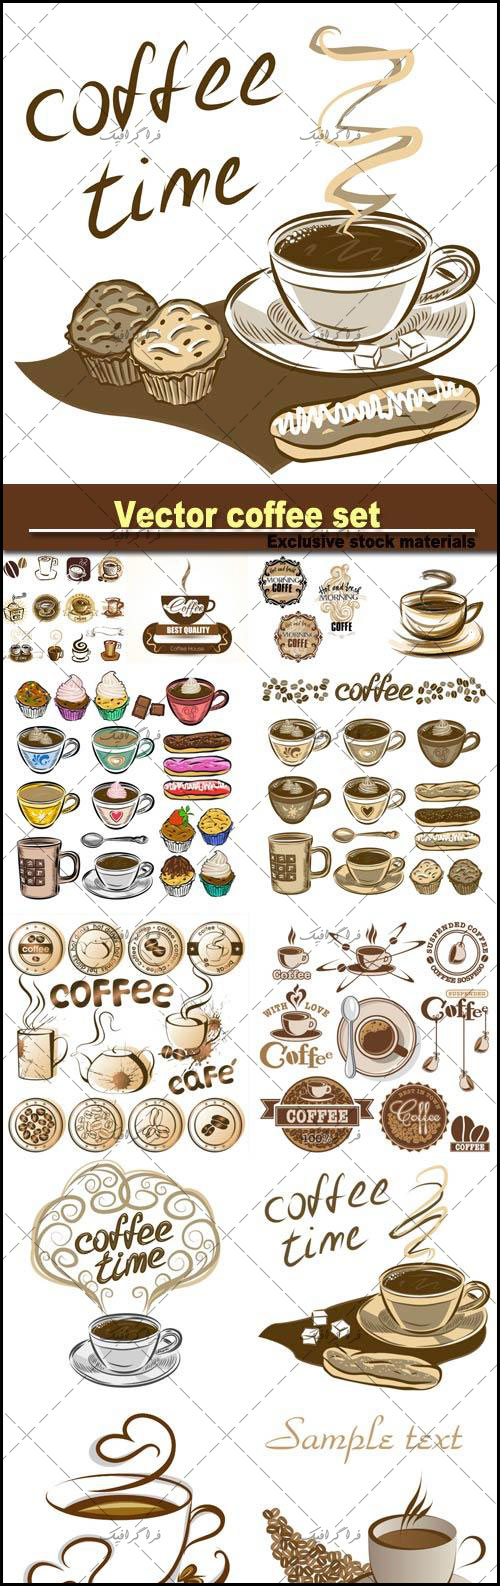 دانلود وکتور طرح های فنجان قهوه و کیک